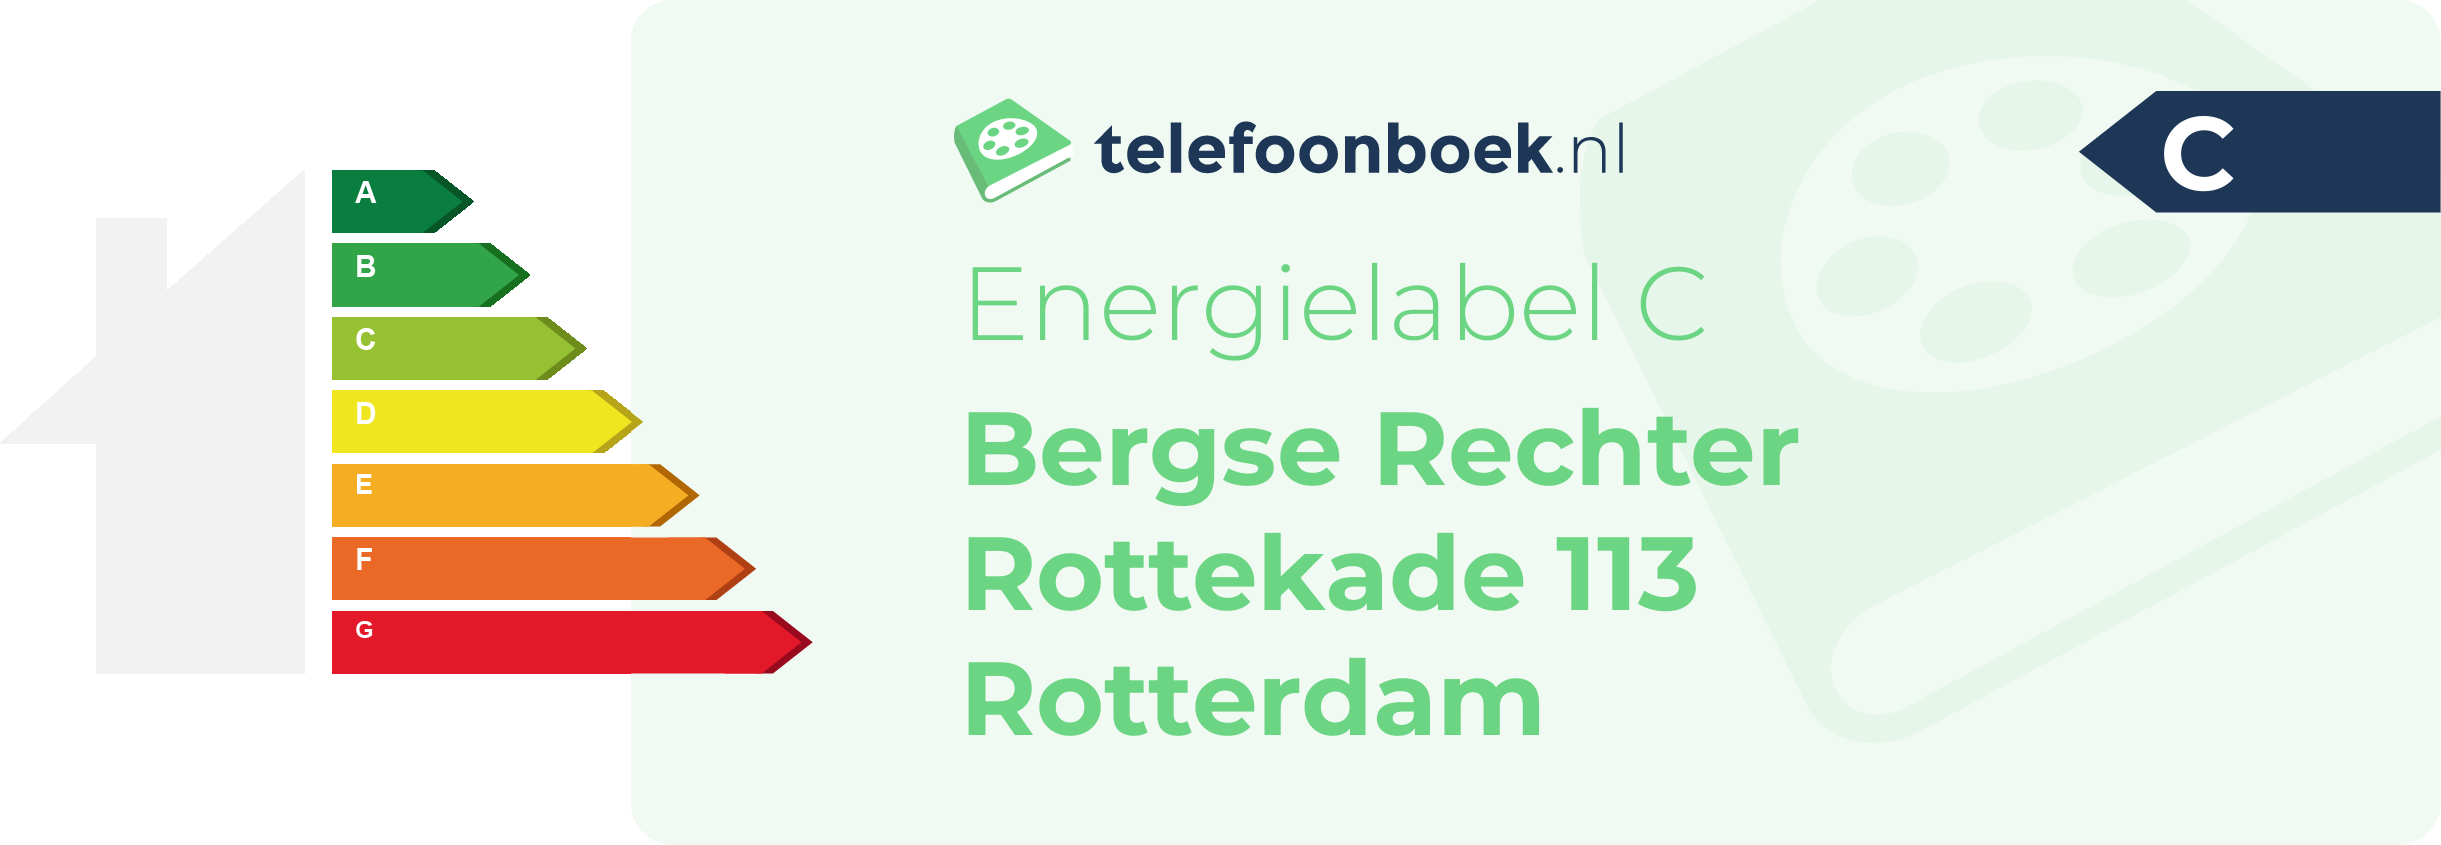 Energielabel Bergse Rechter Rottekade 113 Rotterdam